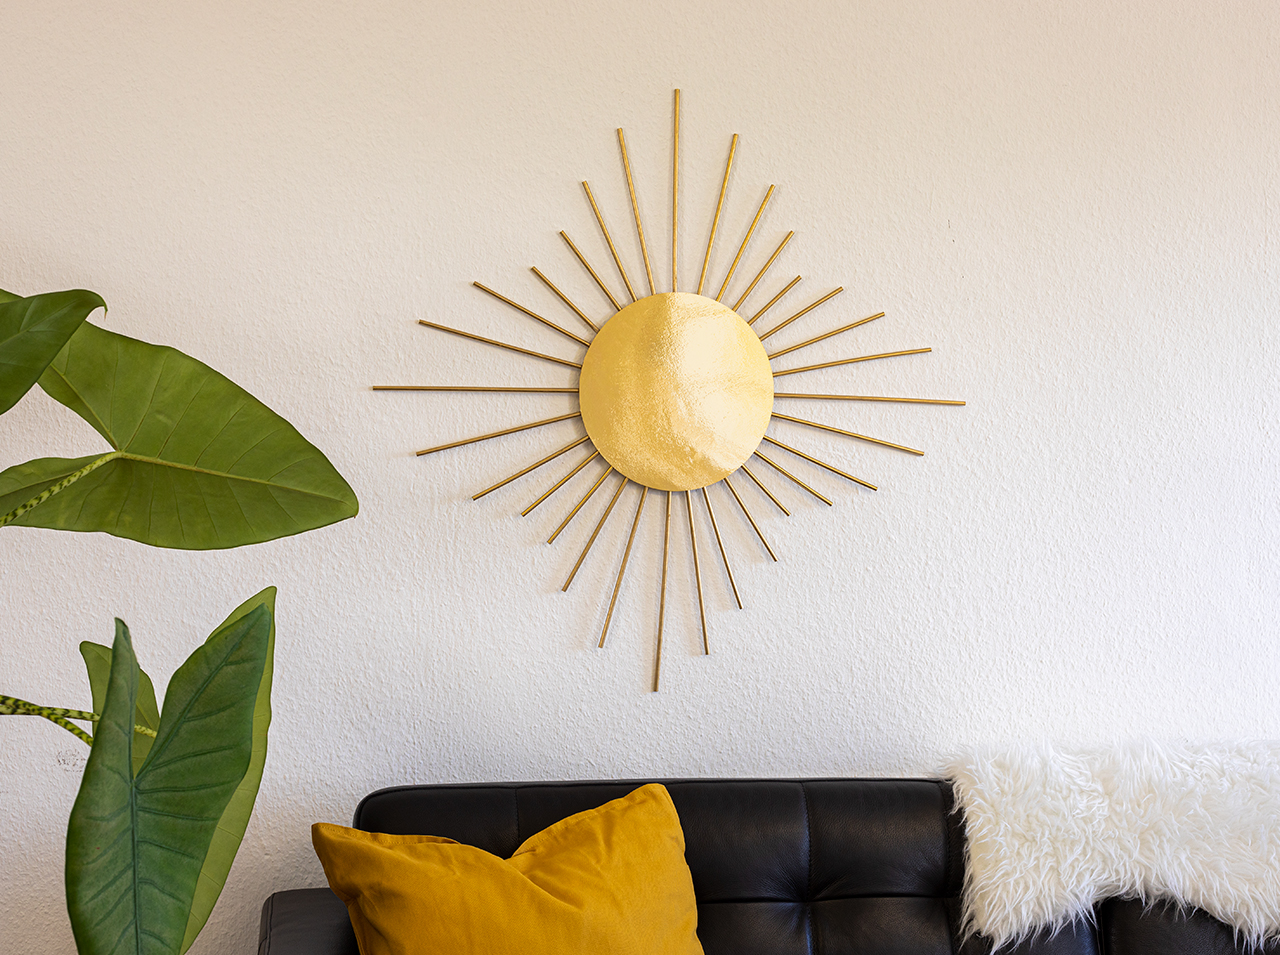 На белой стене висит зеркало-солнце, оформленное в виде круга из зеркальной пленки золотого цвета с золотистыми деревянными лучами по всему периметру.